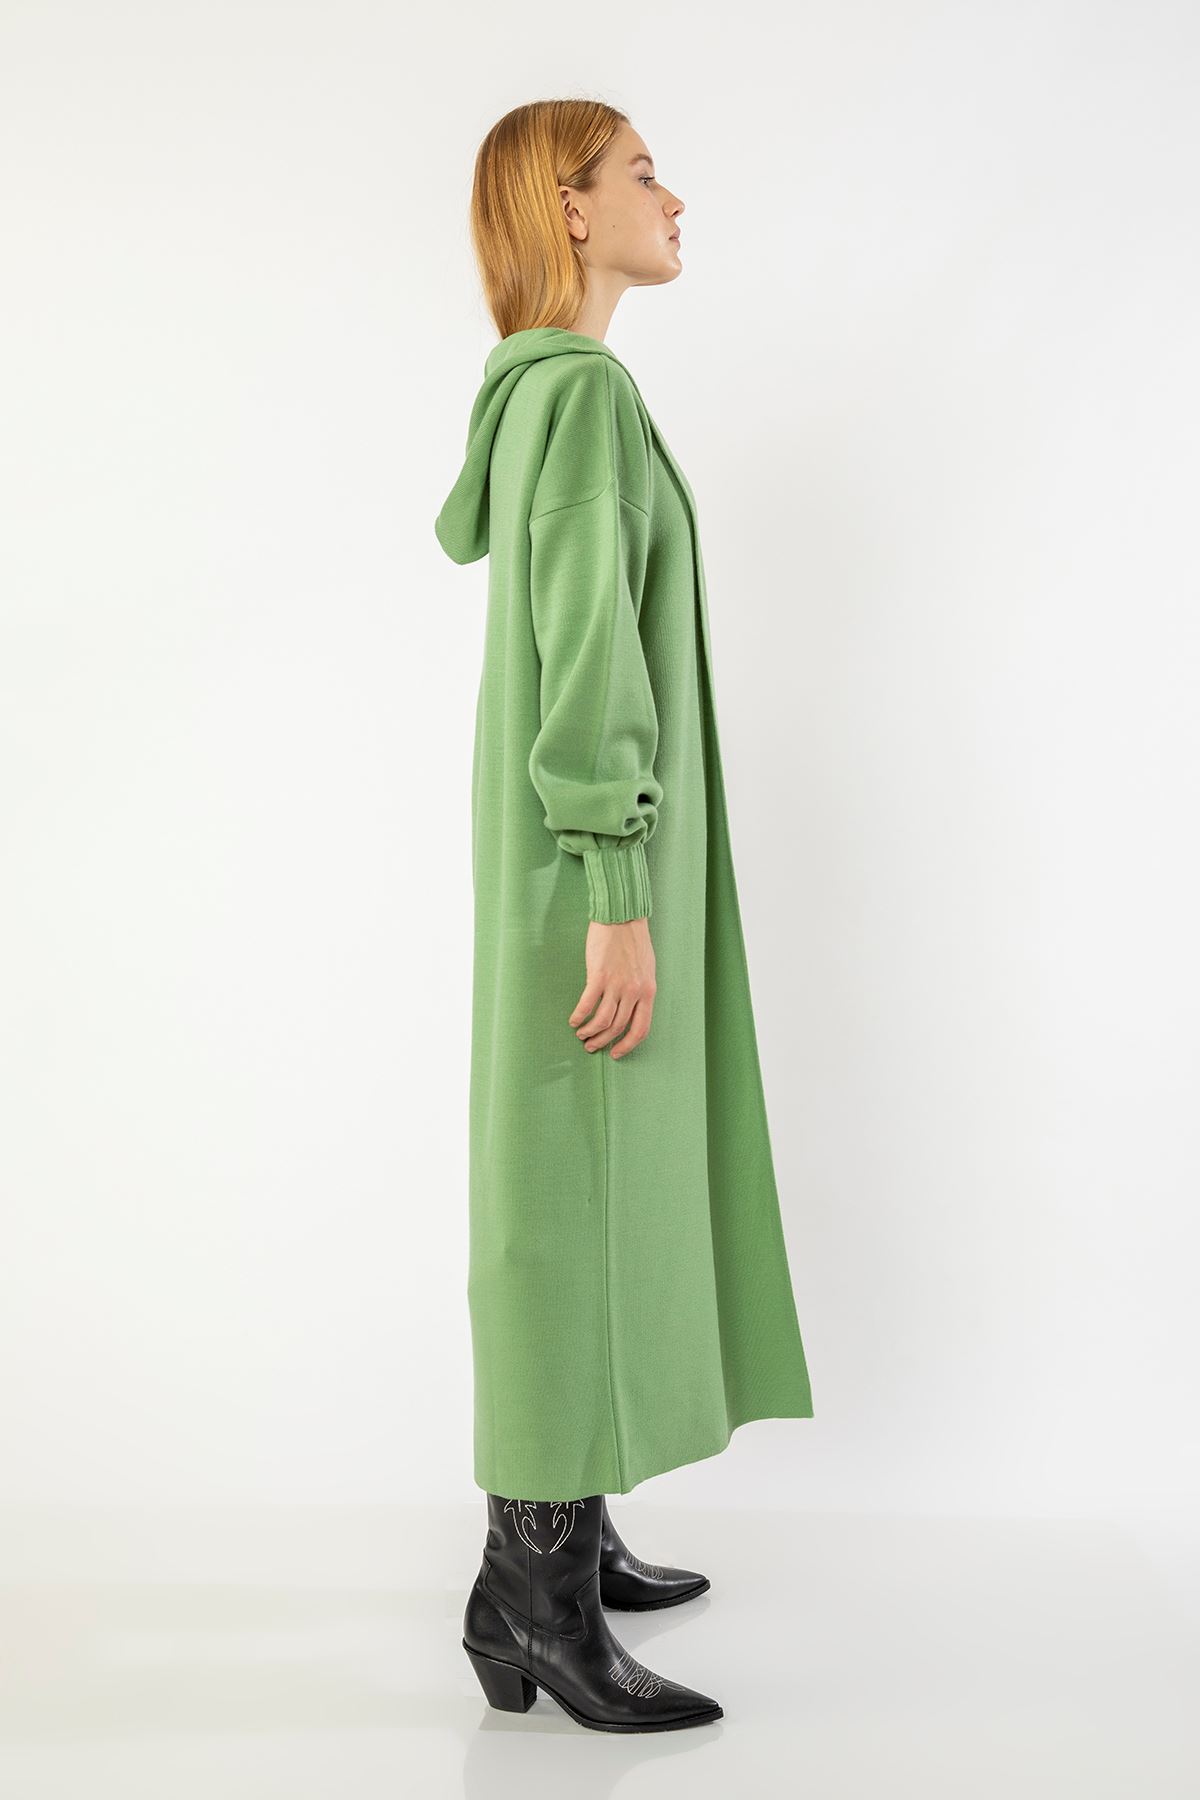 Knitwear Fabric Long Sleeve Hooded Long Oversize Women Cardigan With Belt - Mustard Green